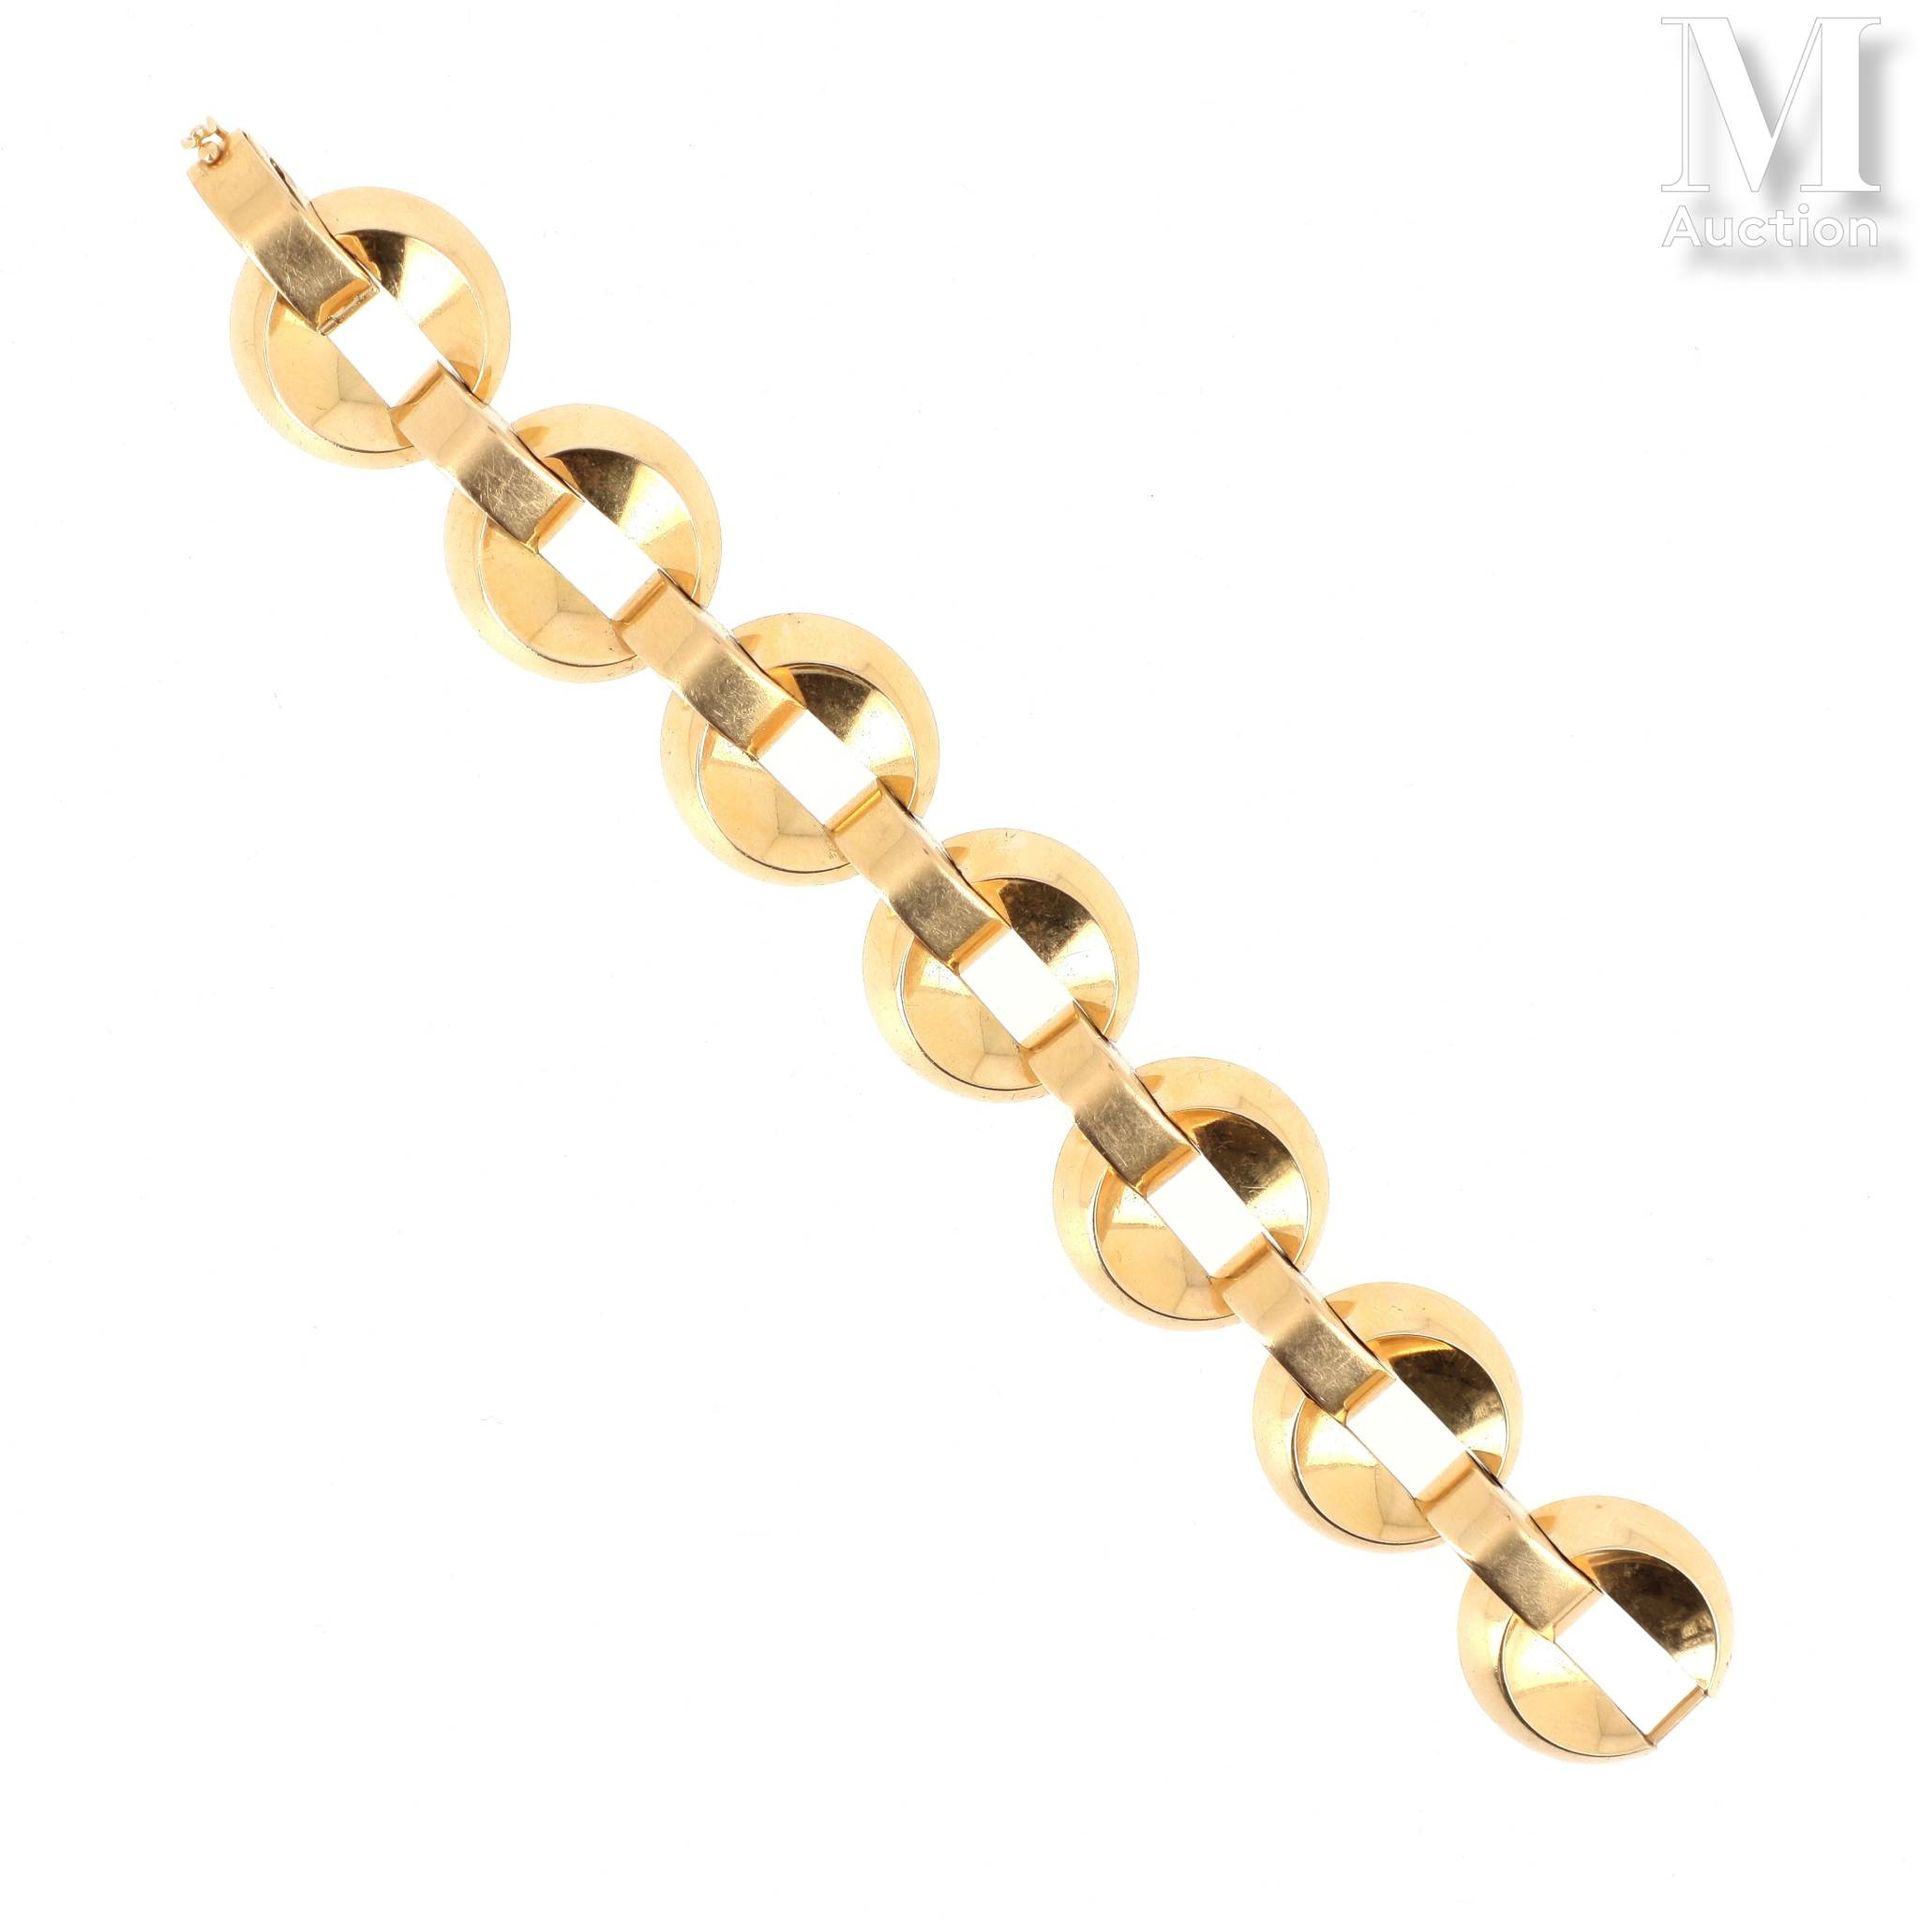 Bracelet or jaune 18K黄金（千分之七十五）手镯，由圆形链节和 "桥 "节穿插组成。大约在1940年。 
毛重：82.2克。长度：21.3厘米